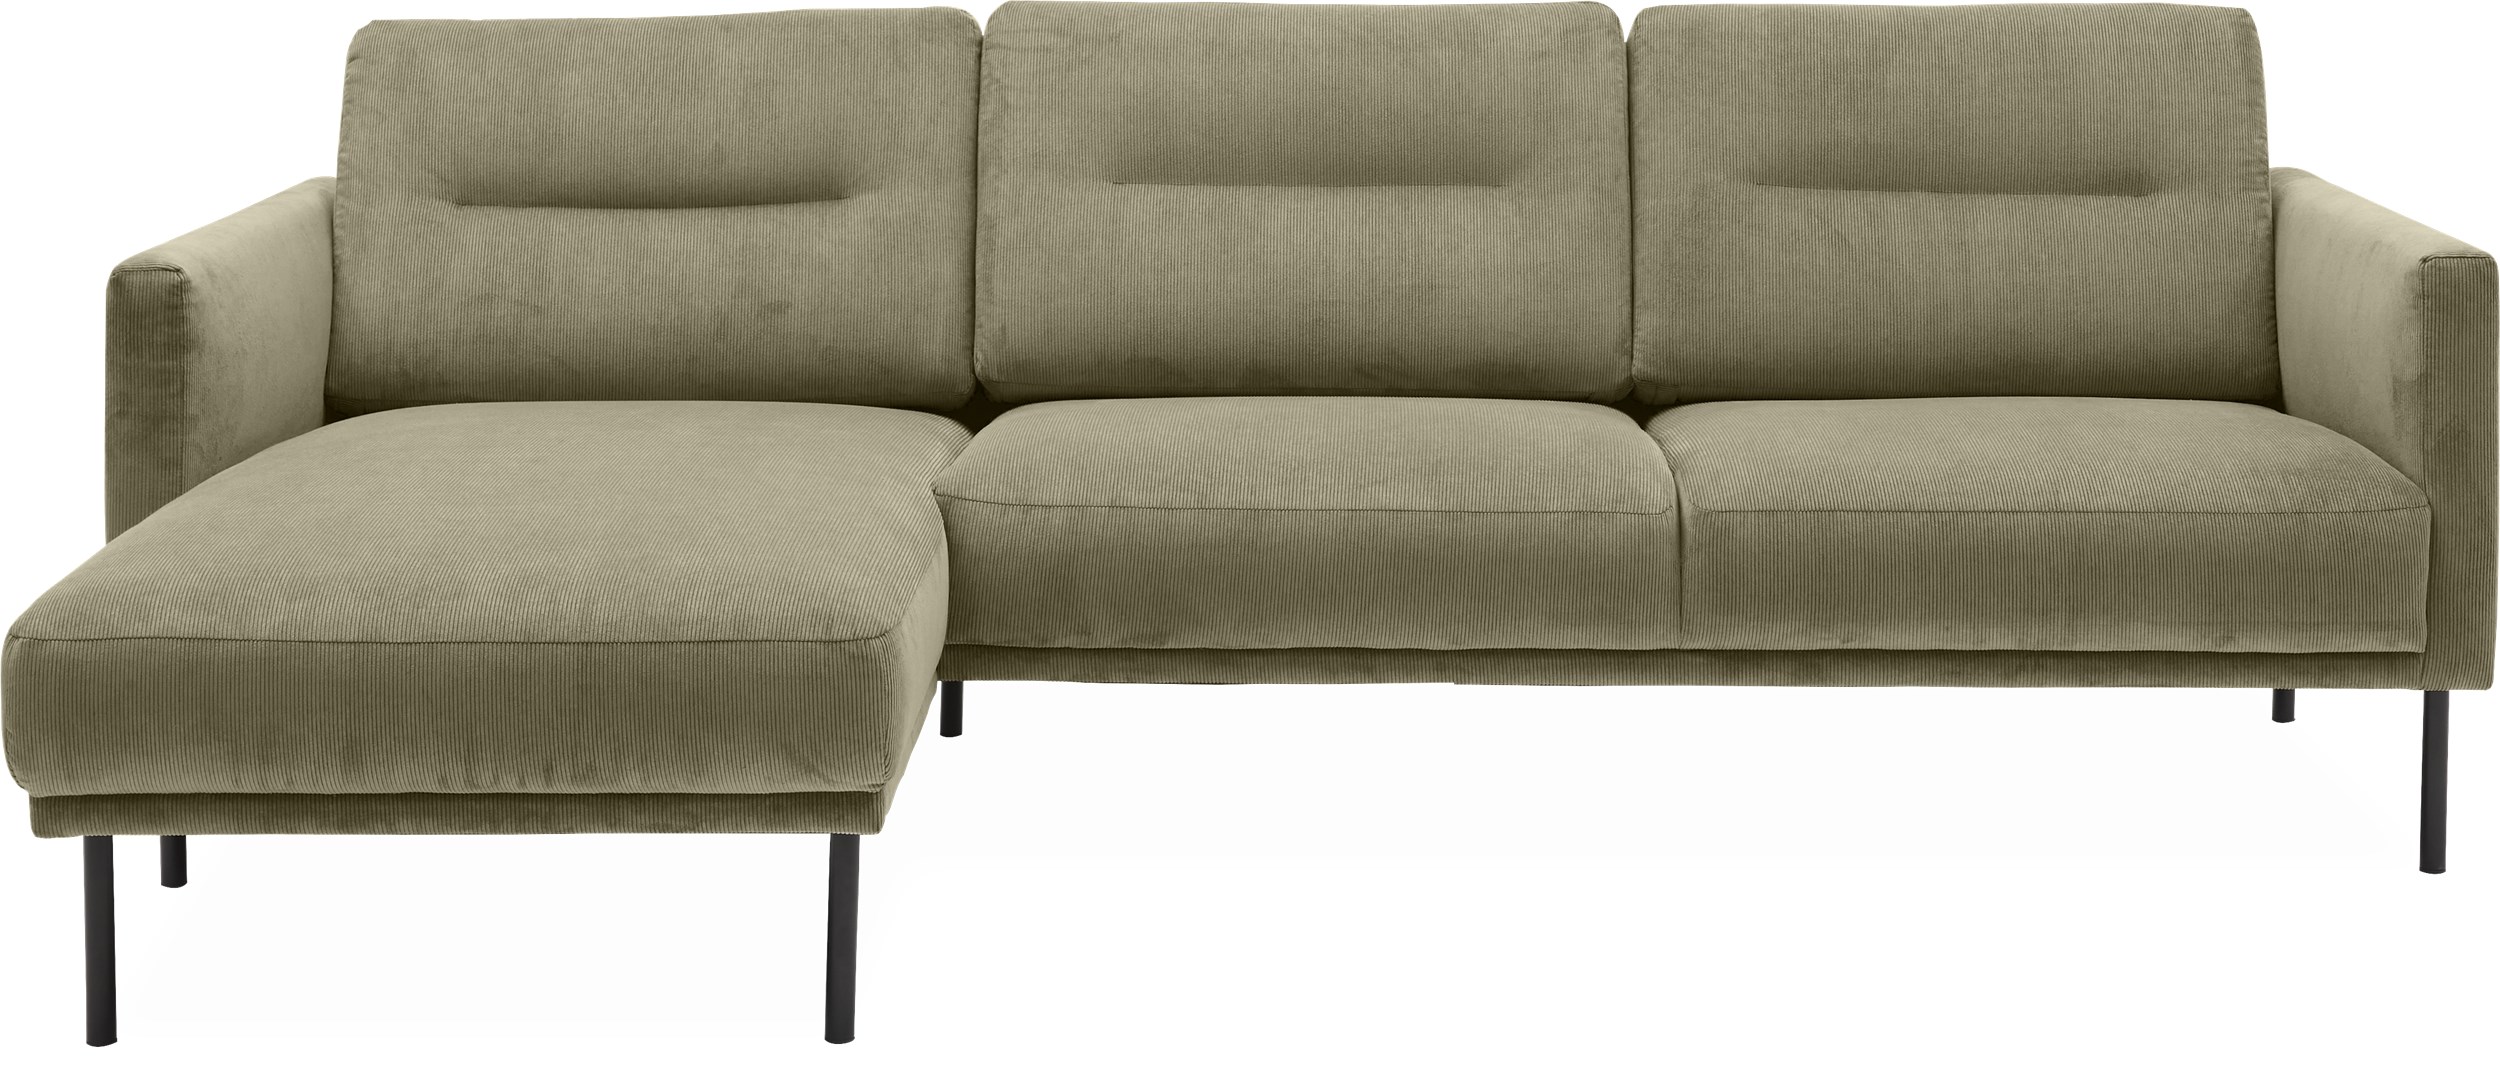 Larvik venstrevendt sofa med chaiselong - Wave 180 Moss stof og ben i sortlakeret metal